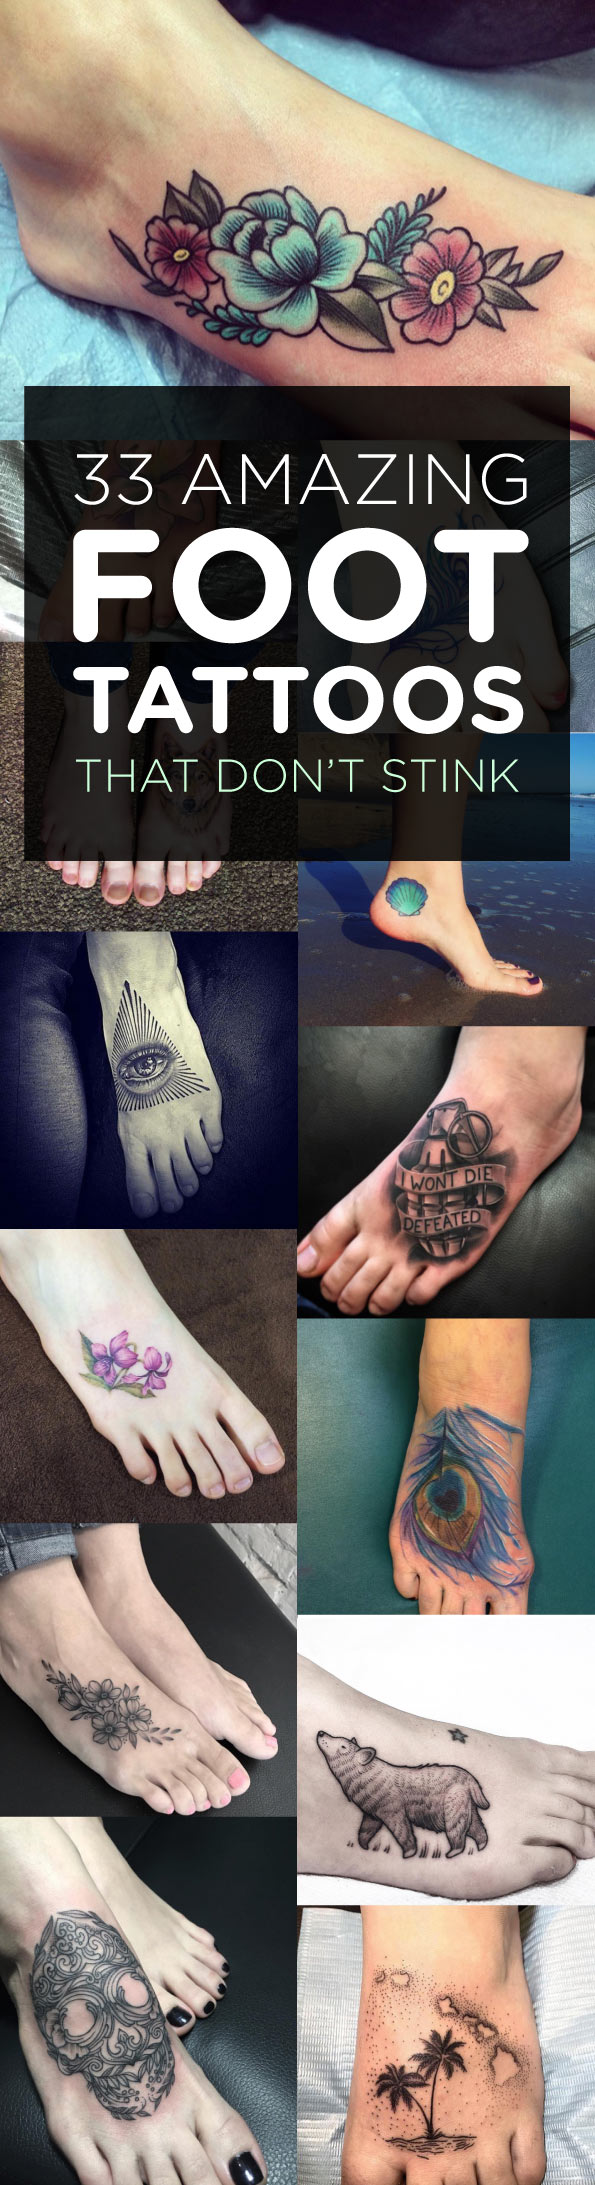 33 Amazing Foot Tattoos That Don't Stink | TattooBlend